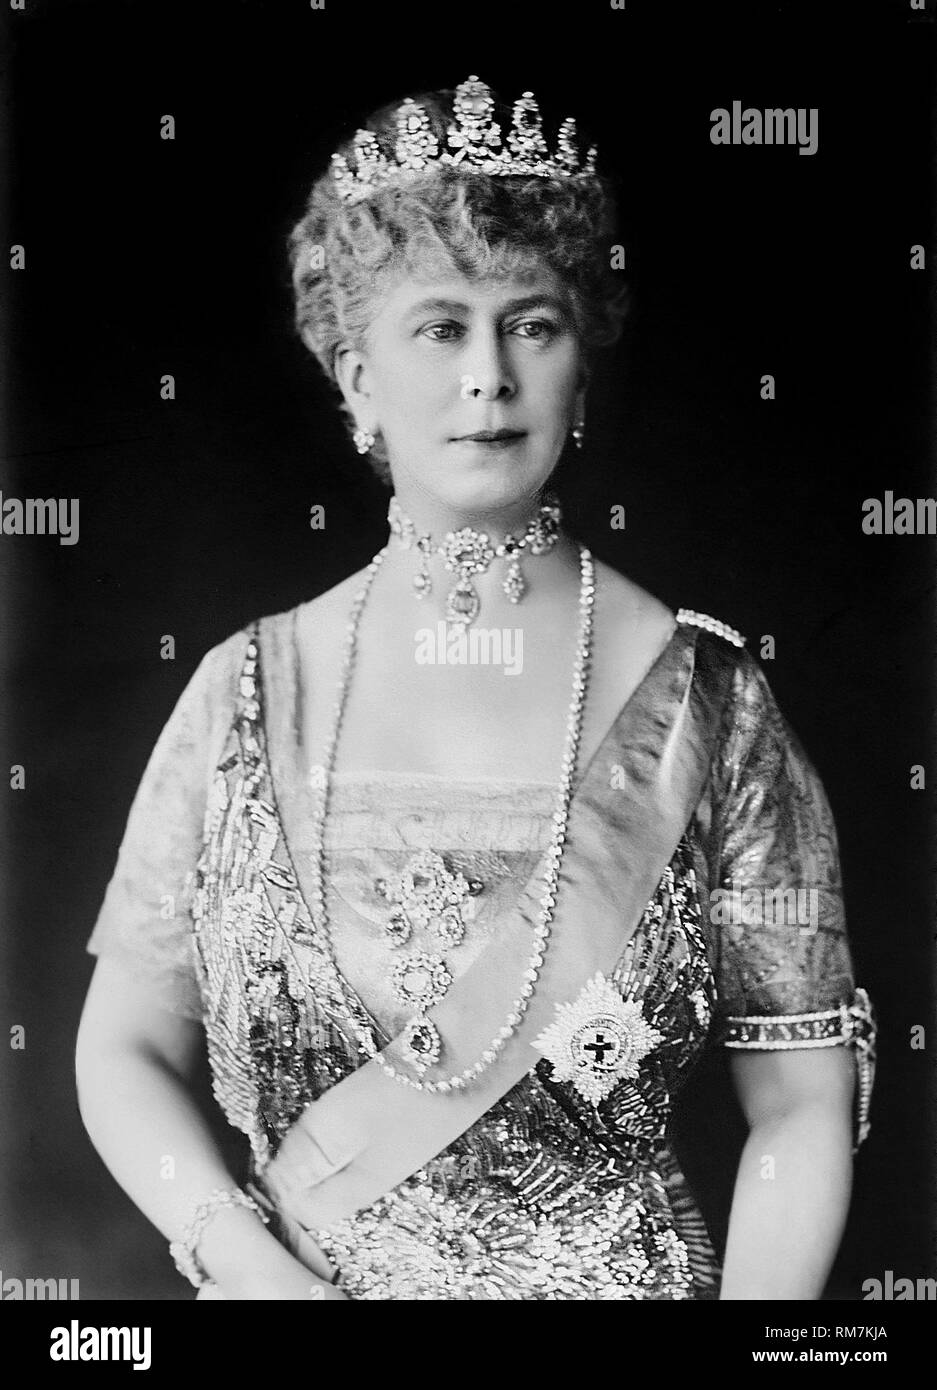 Queen Mary von Teck des Vereinigten Königreichs, Porträt c 1925 Stockfoto